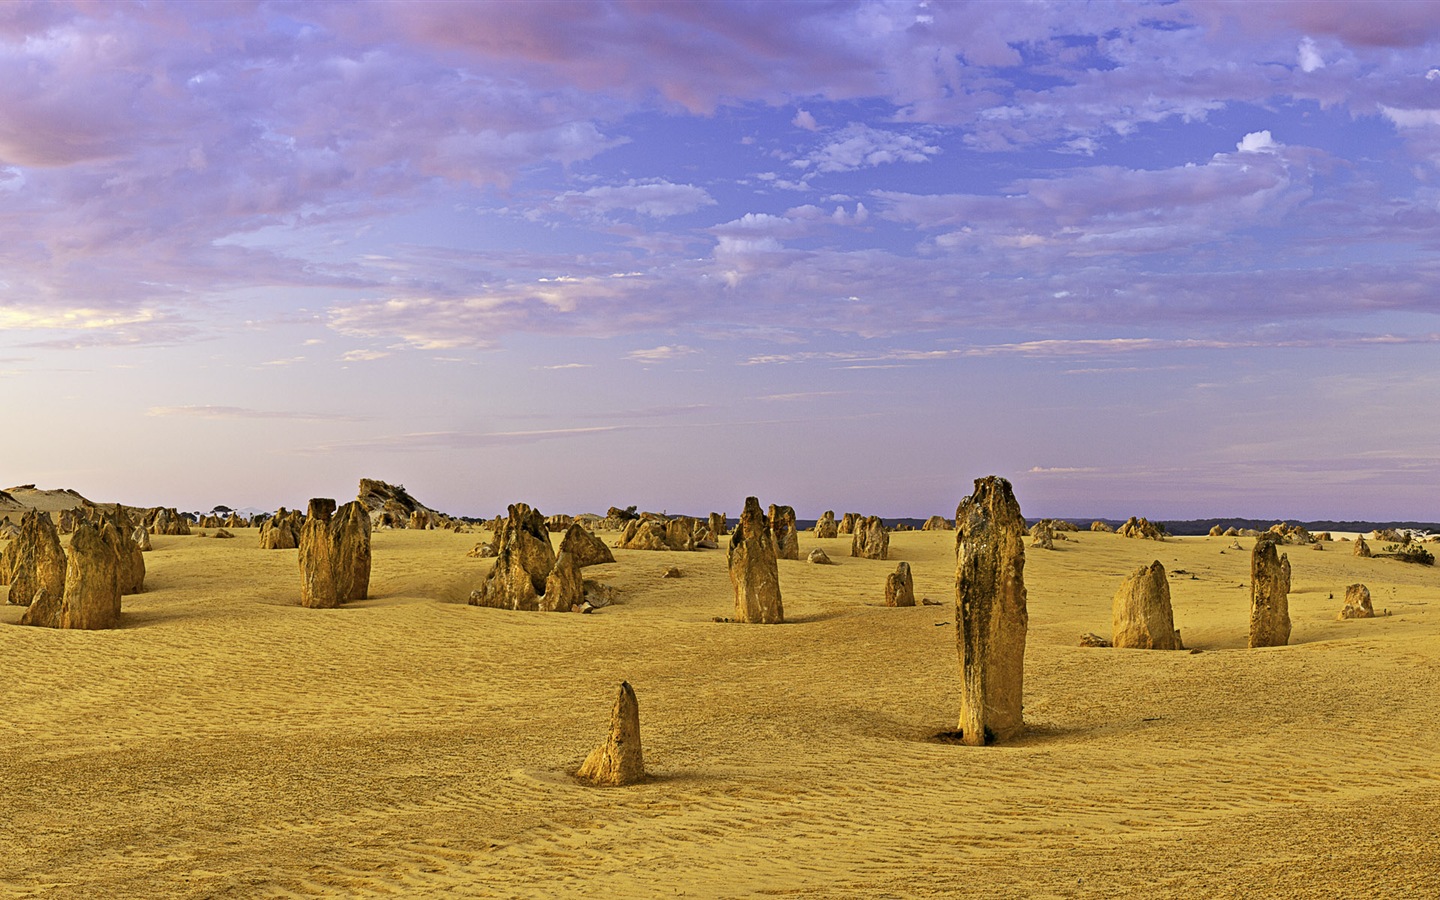 Les déserts chauds et arides, de Windows 8 fonds d'écran widescreen panoramique #8 - 1440x900